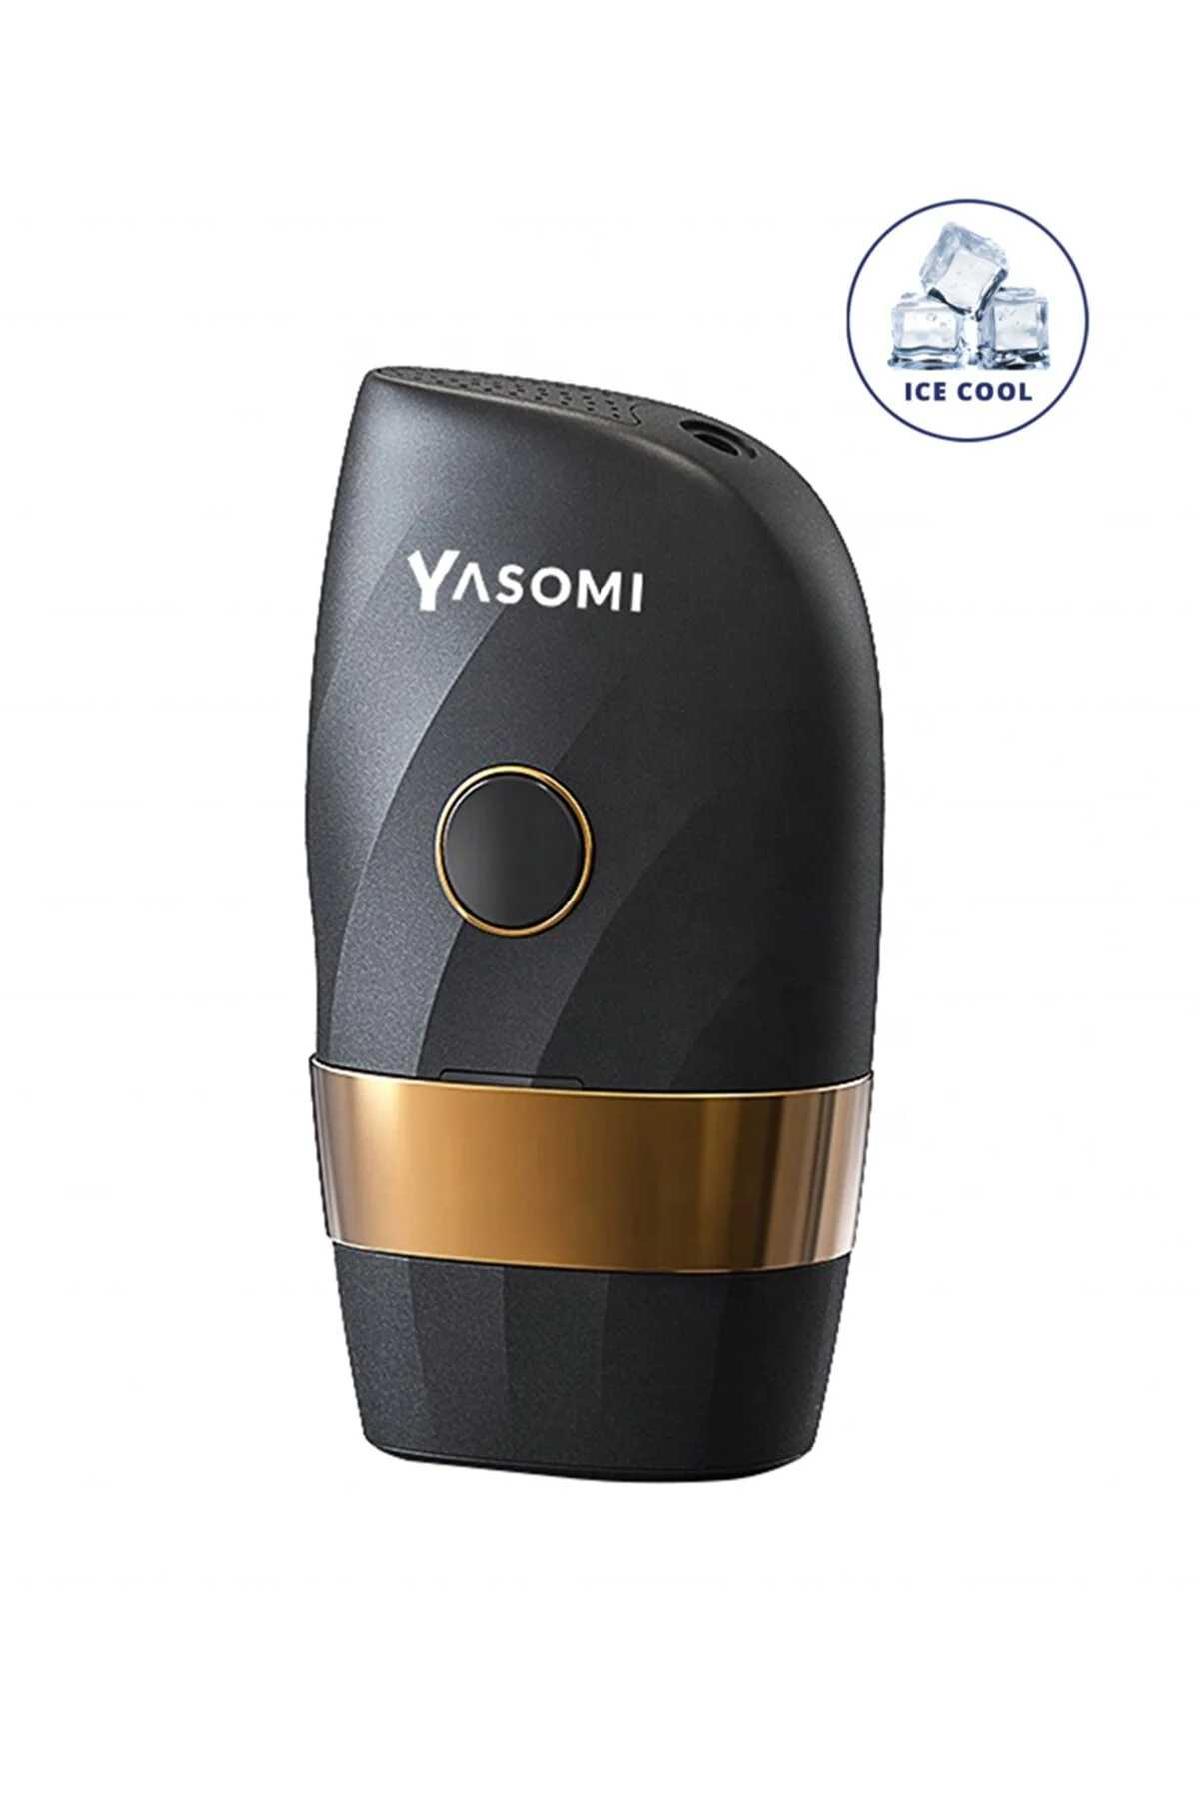 دستگاه لیزر موهای زائد Yasomi کد.1012